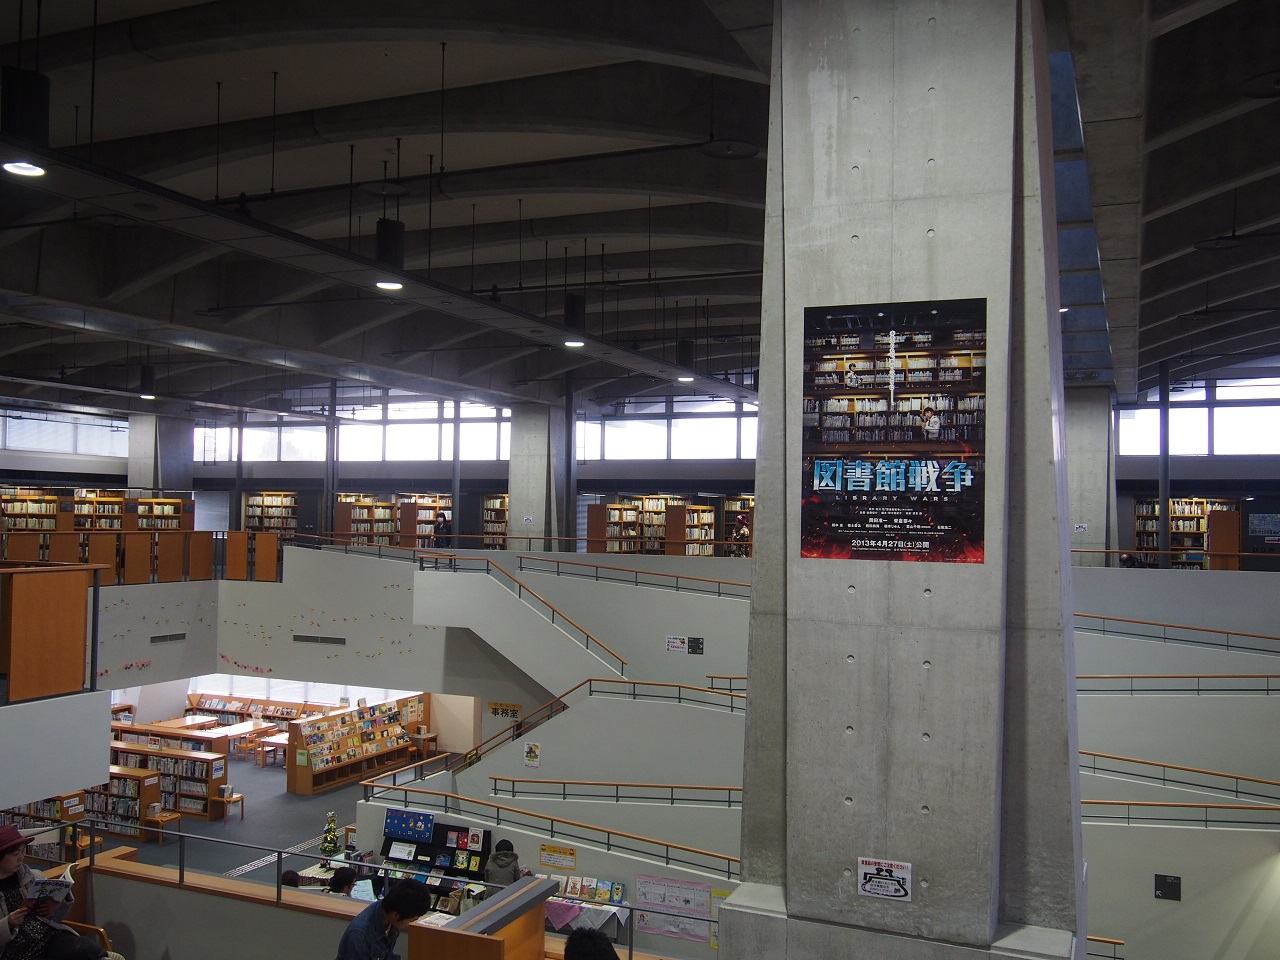 映画 図書館戦争 ロケ地で使われた図書館 十日町情報館の建築に魅せられる にいがたレポ